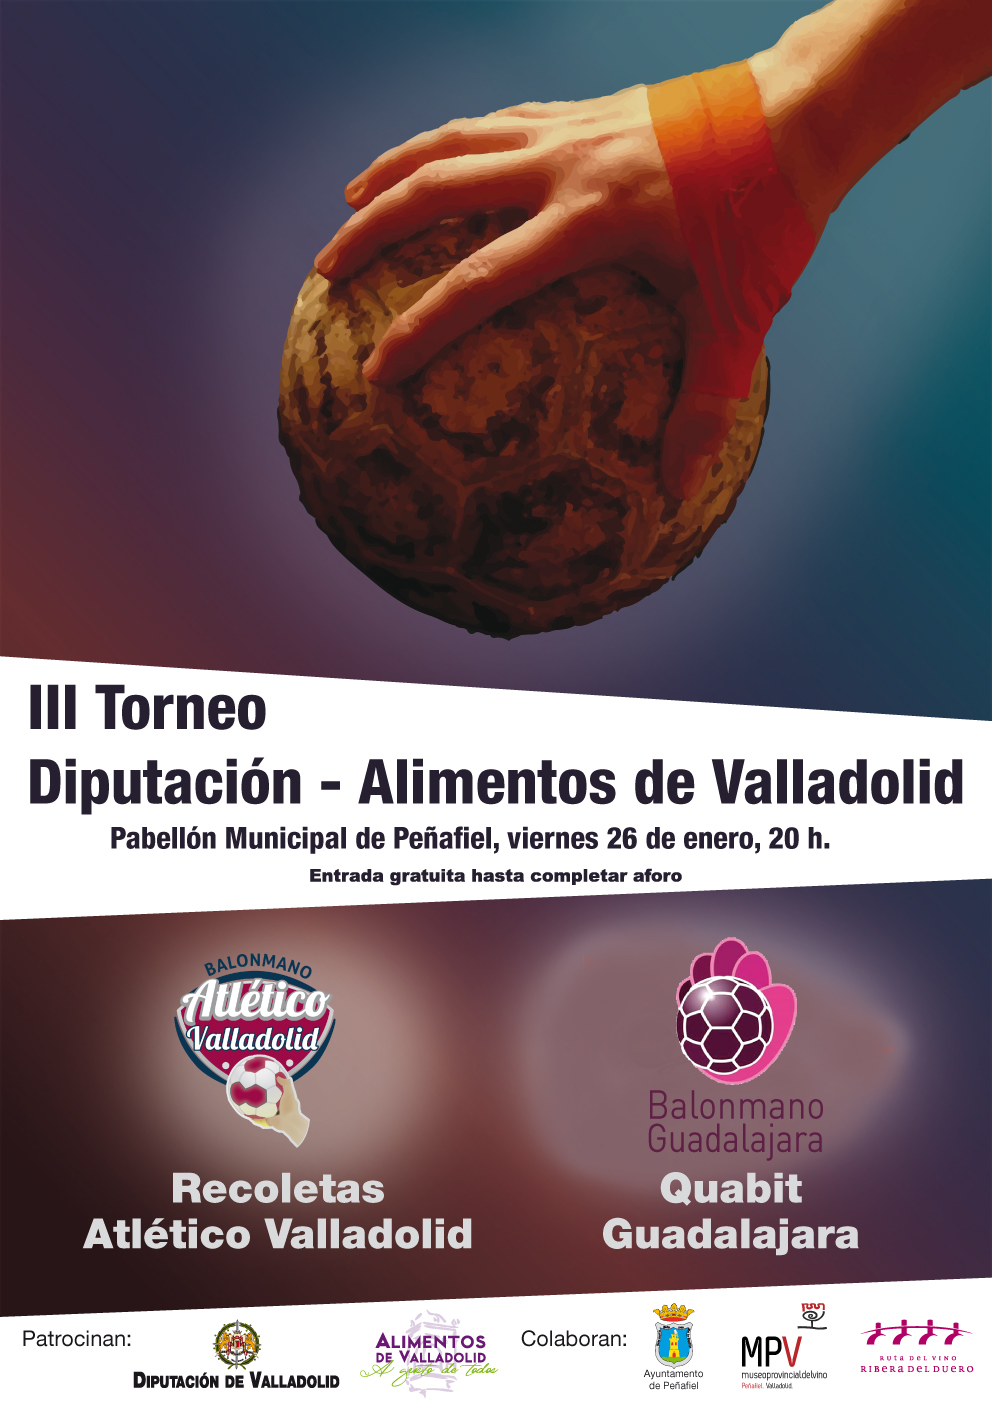 El Recoletas Atlético Valladolid y Quabit Guadalajara disputan el III Torneo Diputación - Alimentos de Valladolid en Peñafiel 